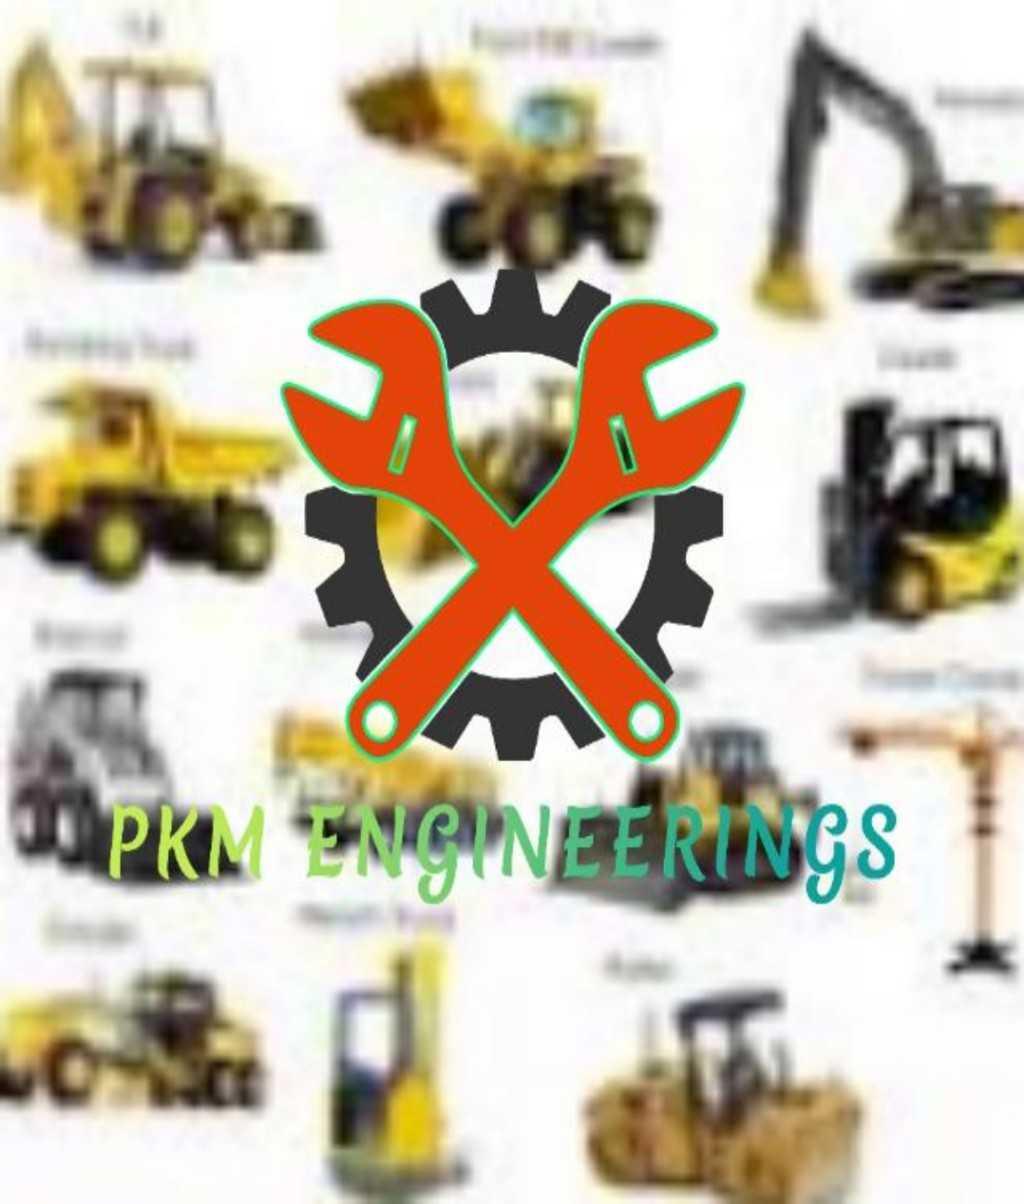 PKM Engineering